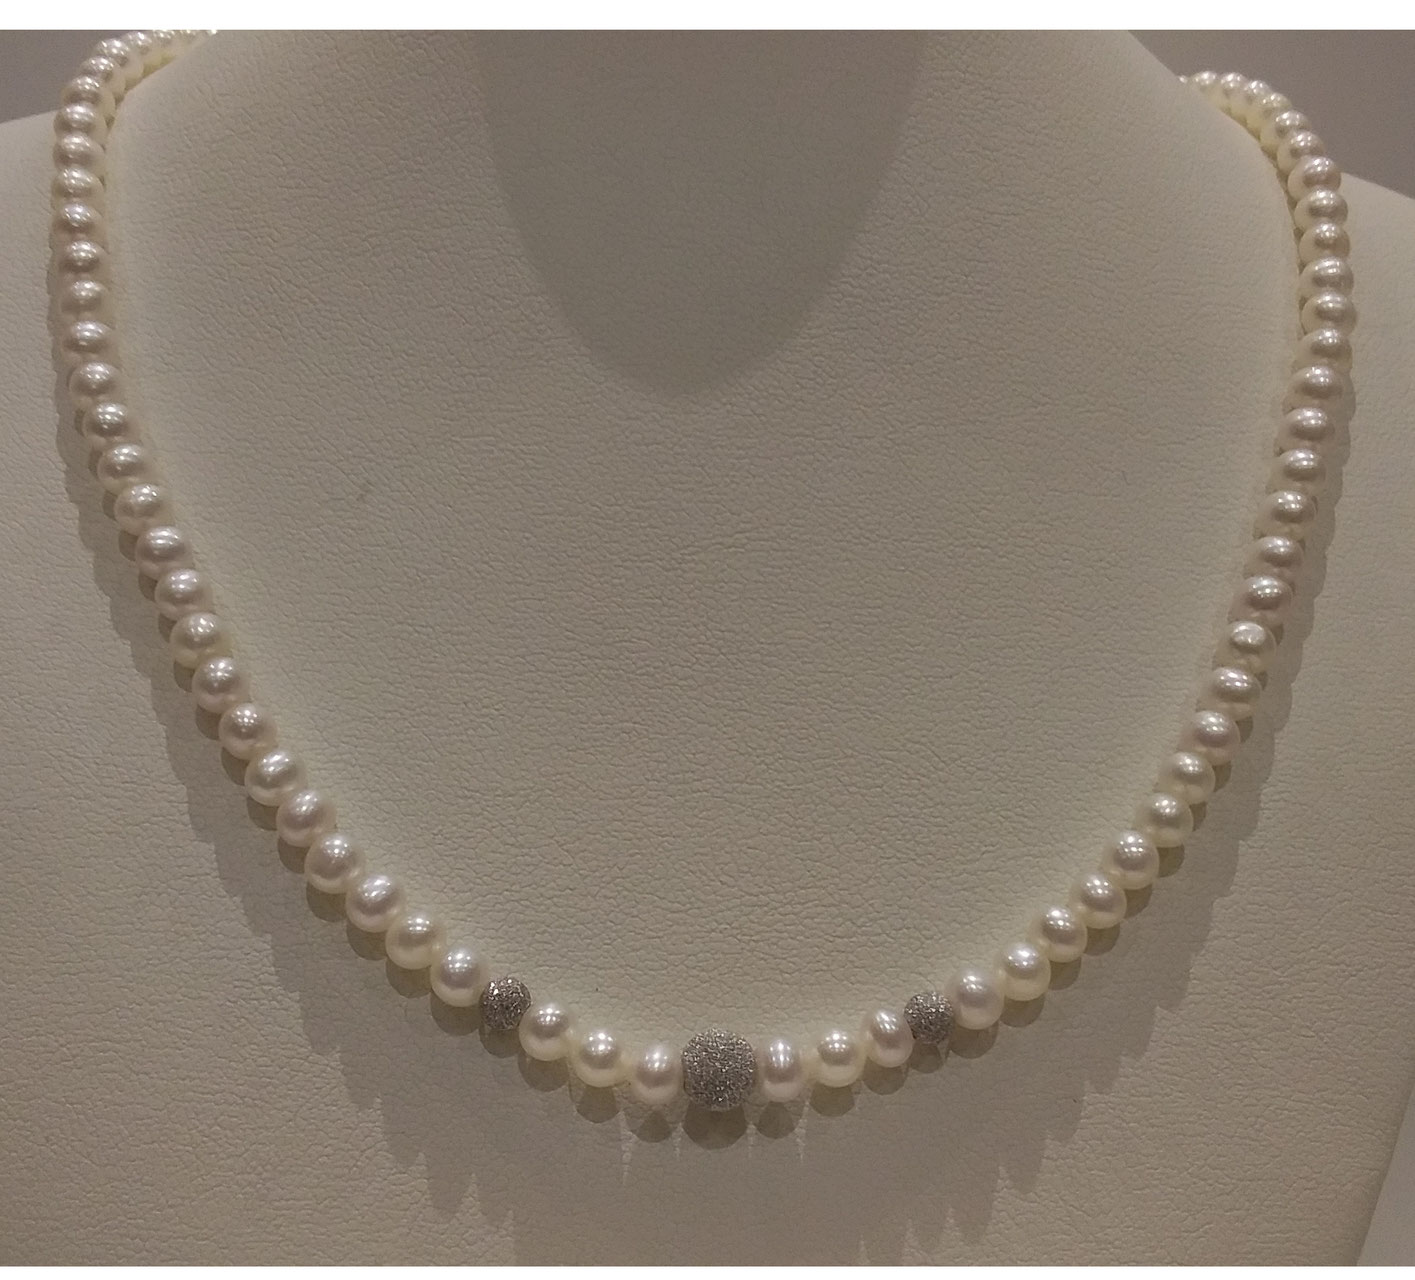 Shop donna gioielli con perle collane - Gioielleria P.Gerometta -  Spilimbergo